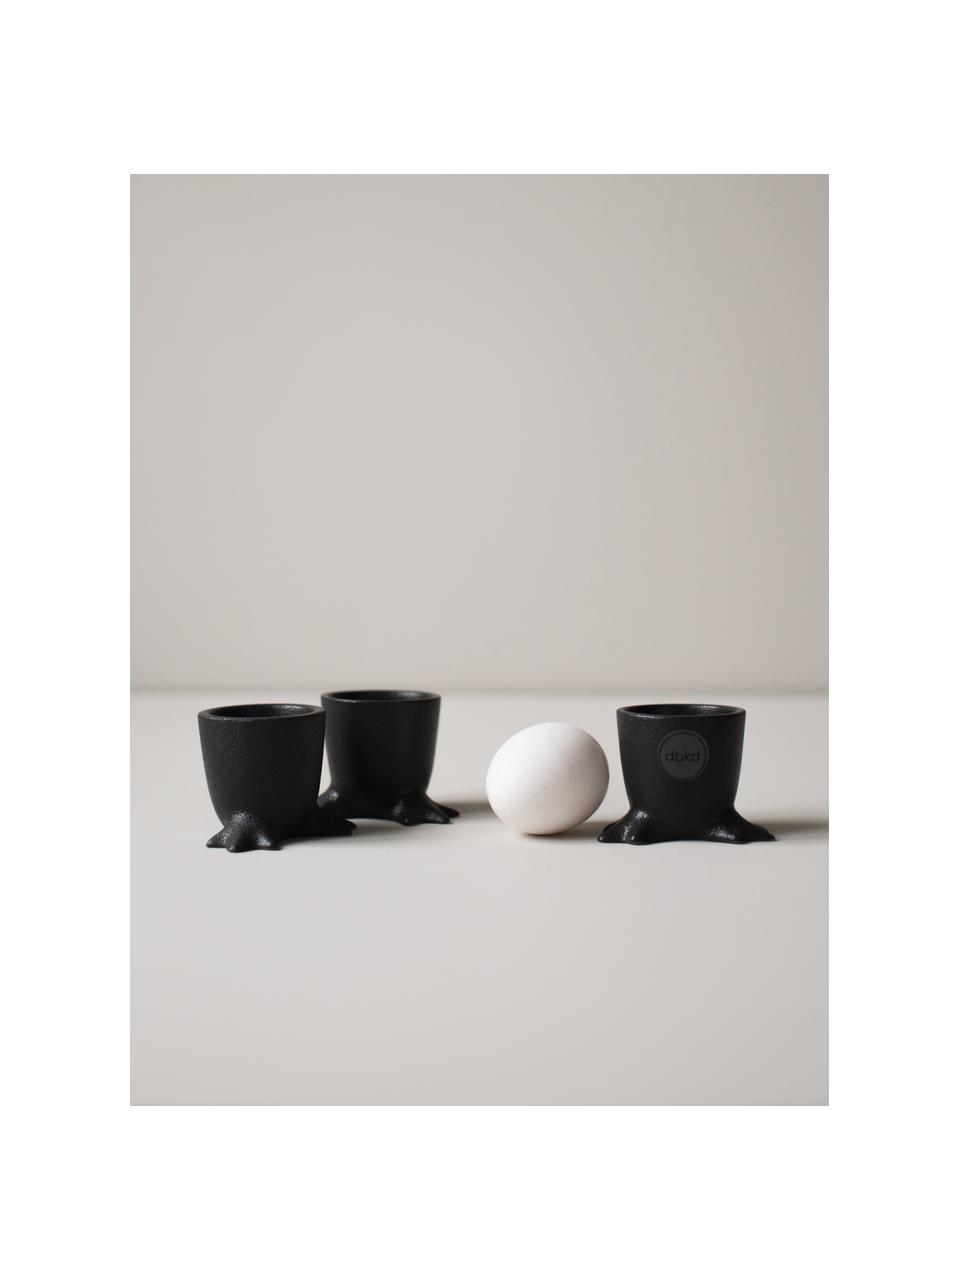 Stojany na vajíčka Walking Egg, 2 ks, Keramika, Čierna, Ø 5 x V 5 cm